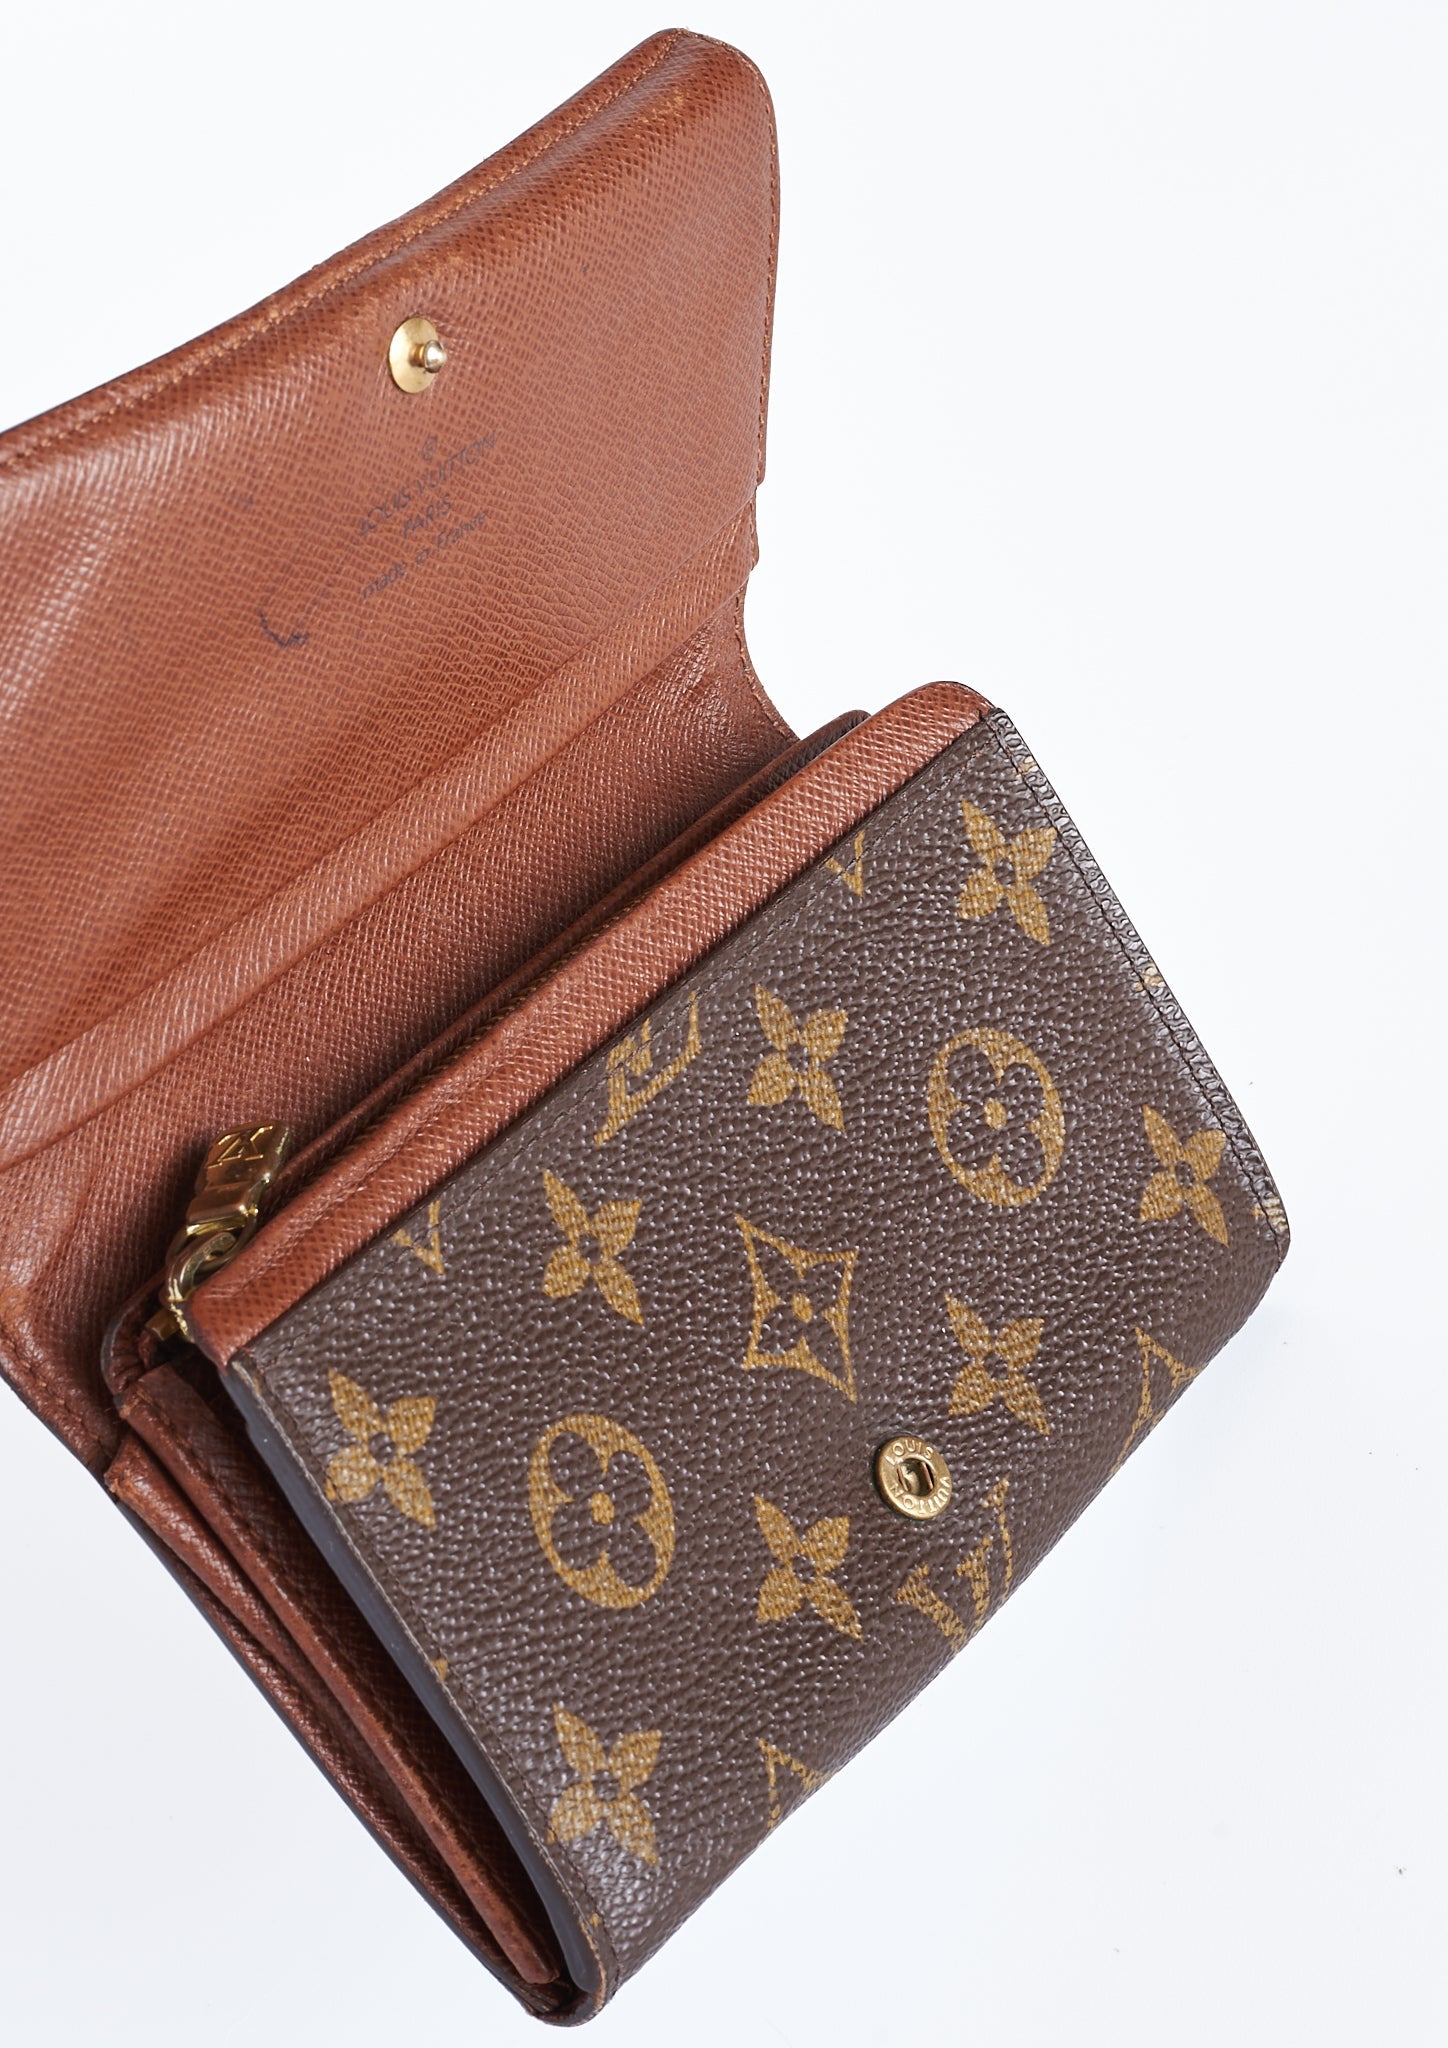 Louis Vuitton - Porte Monnaie Billets Tresor - Women's wallet in Japan